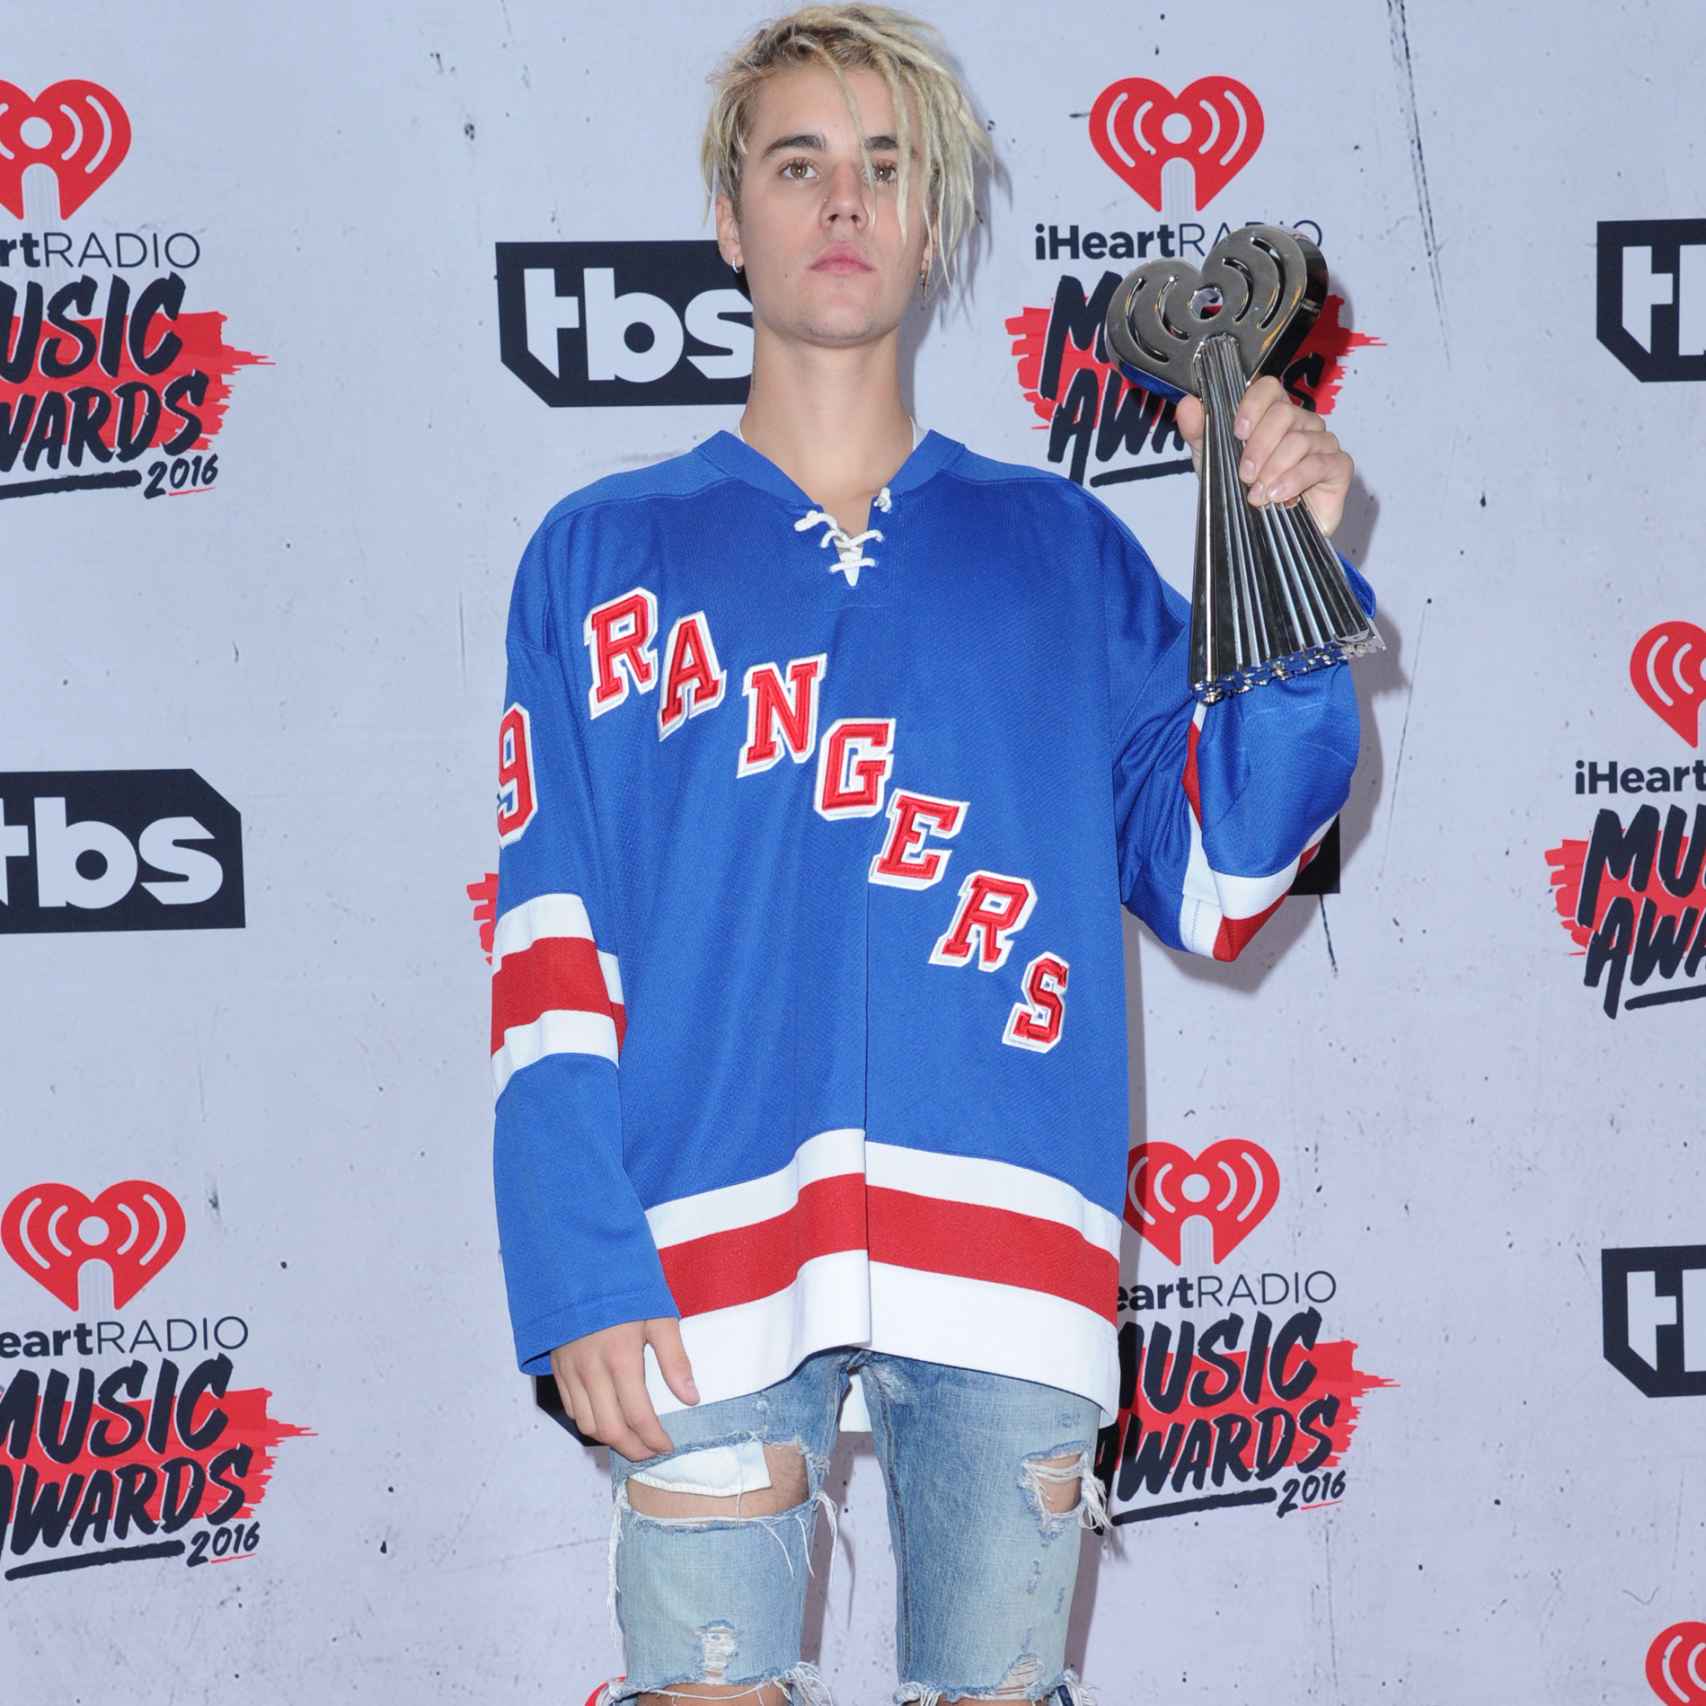 Justin Bieber en el photocall de iHeartRadio